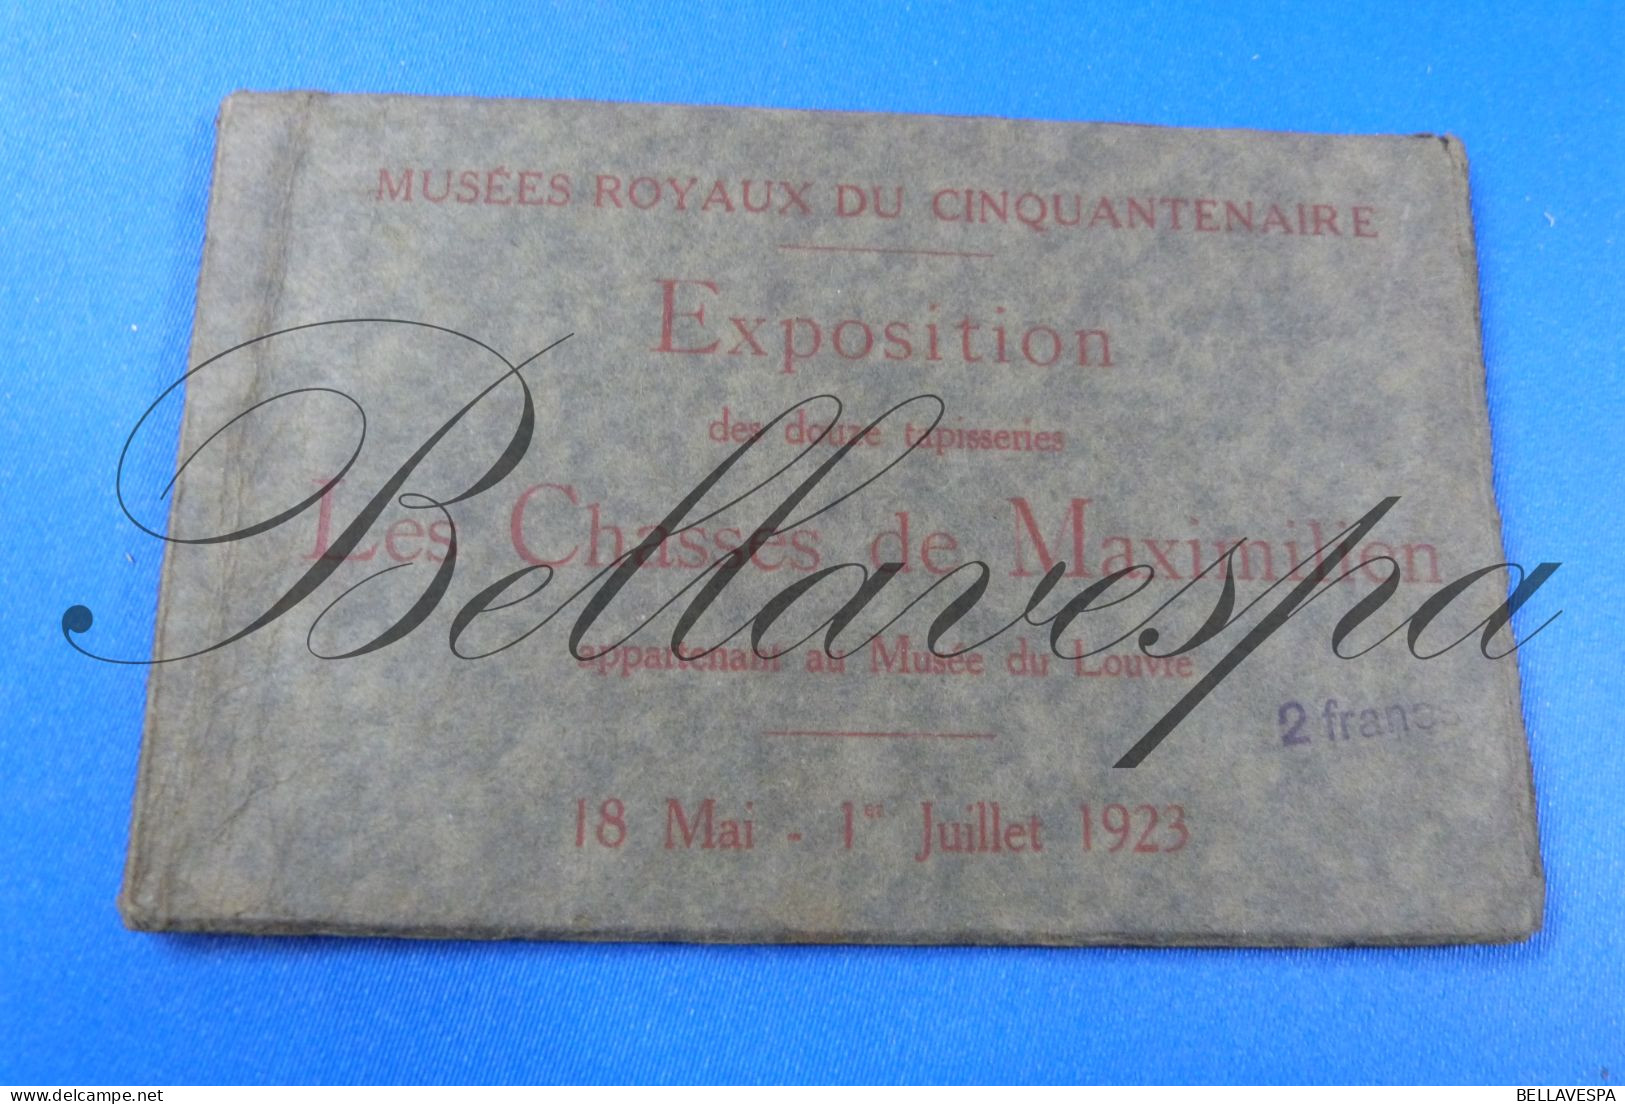 Musées Royaux Expo Lot X 10 Cpa Wandtapijten Tapis Les Chasses De Maximilien  Bruxelles - Louvre 18 Mai -1 Jullet 1923 - Kunstvoorwerpen